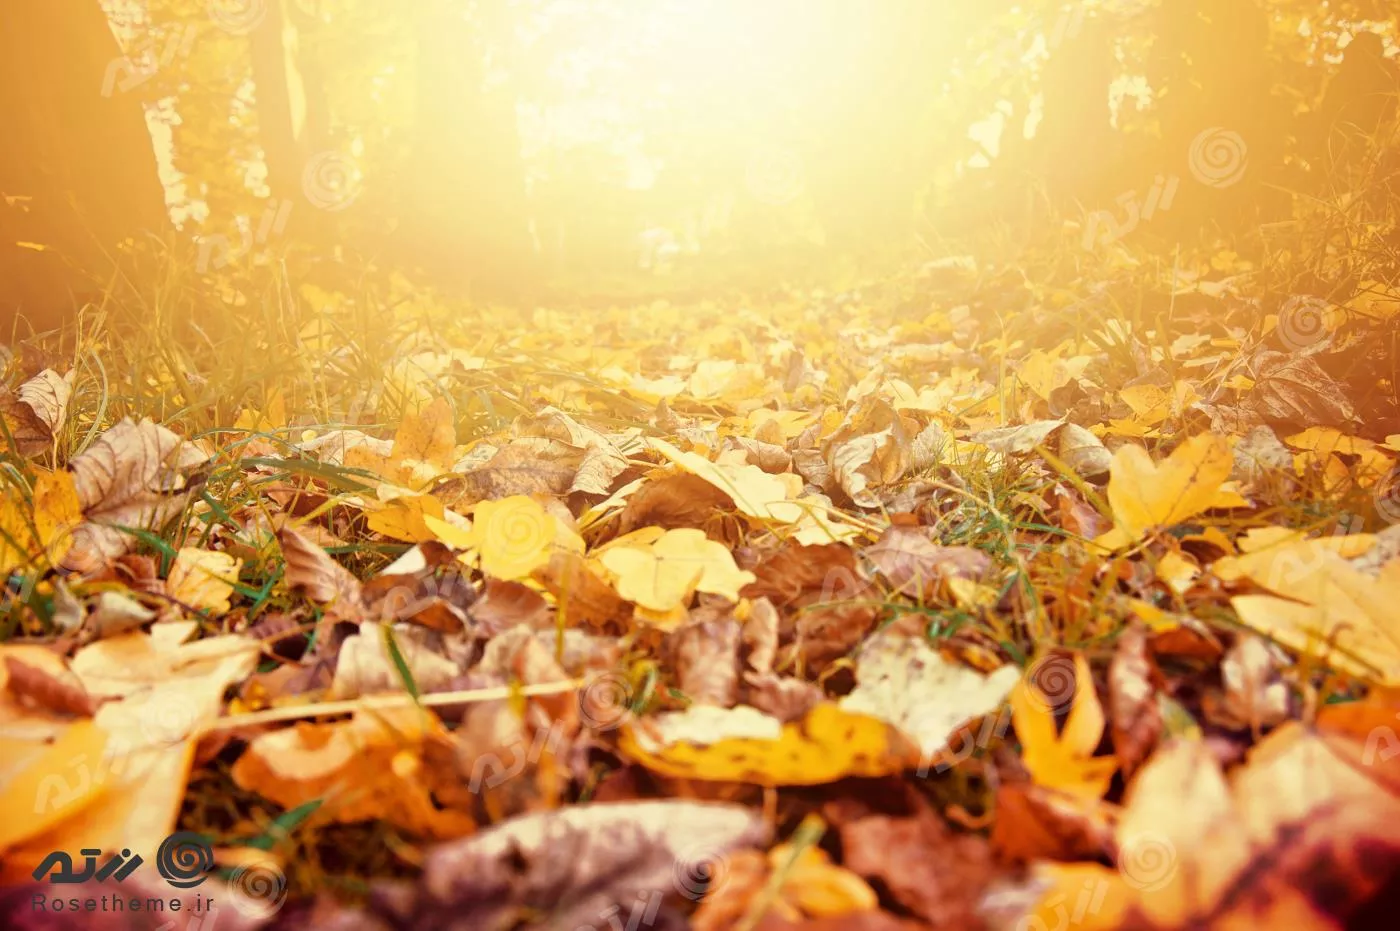 عکس با کیفیت از نمای برگ های پاییزی افتاده روی زمین جنگل در غروب آفتاب مناسب برای استفاده به عنوان تصویر زمینه 22032